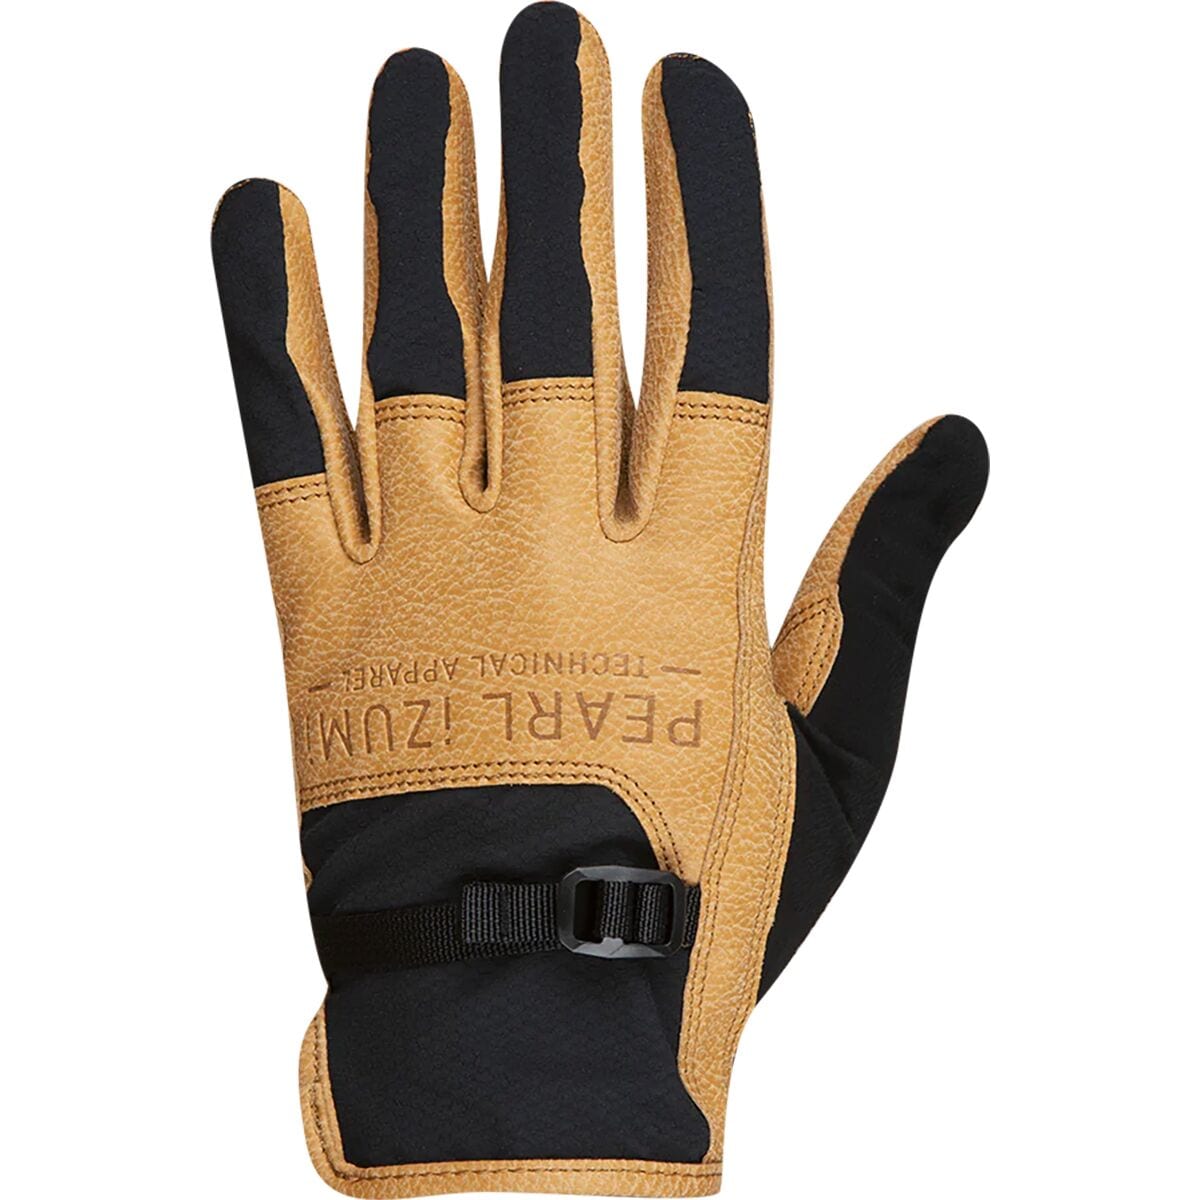 PEARL iZUMi Pulaski Glove - Men's